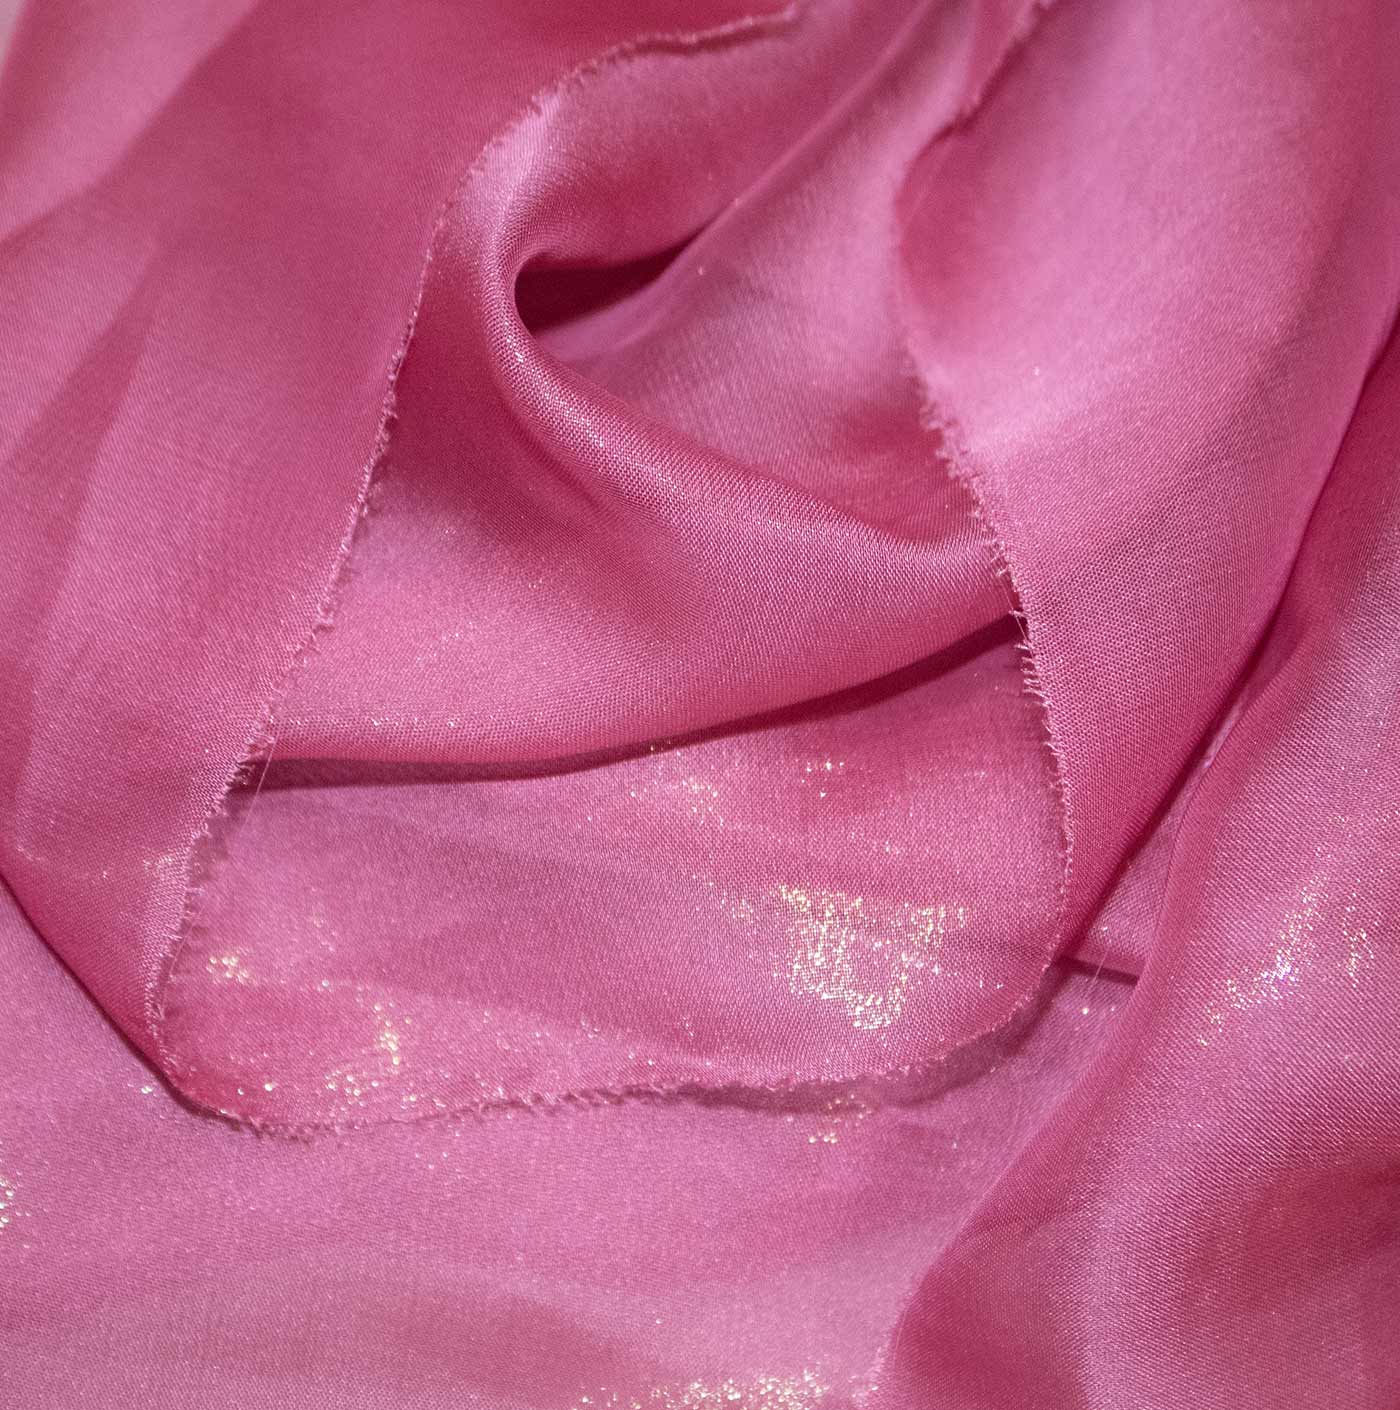 Blush Pink Cationic Chiffon Fabric